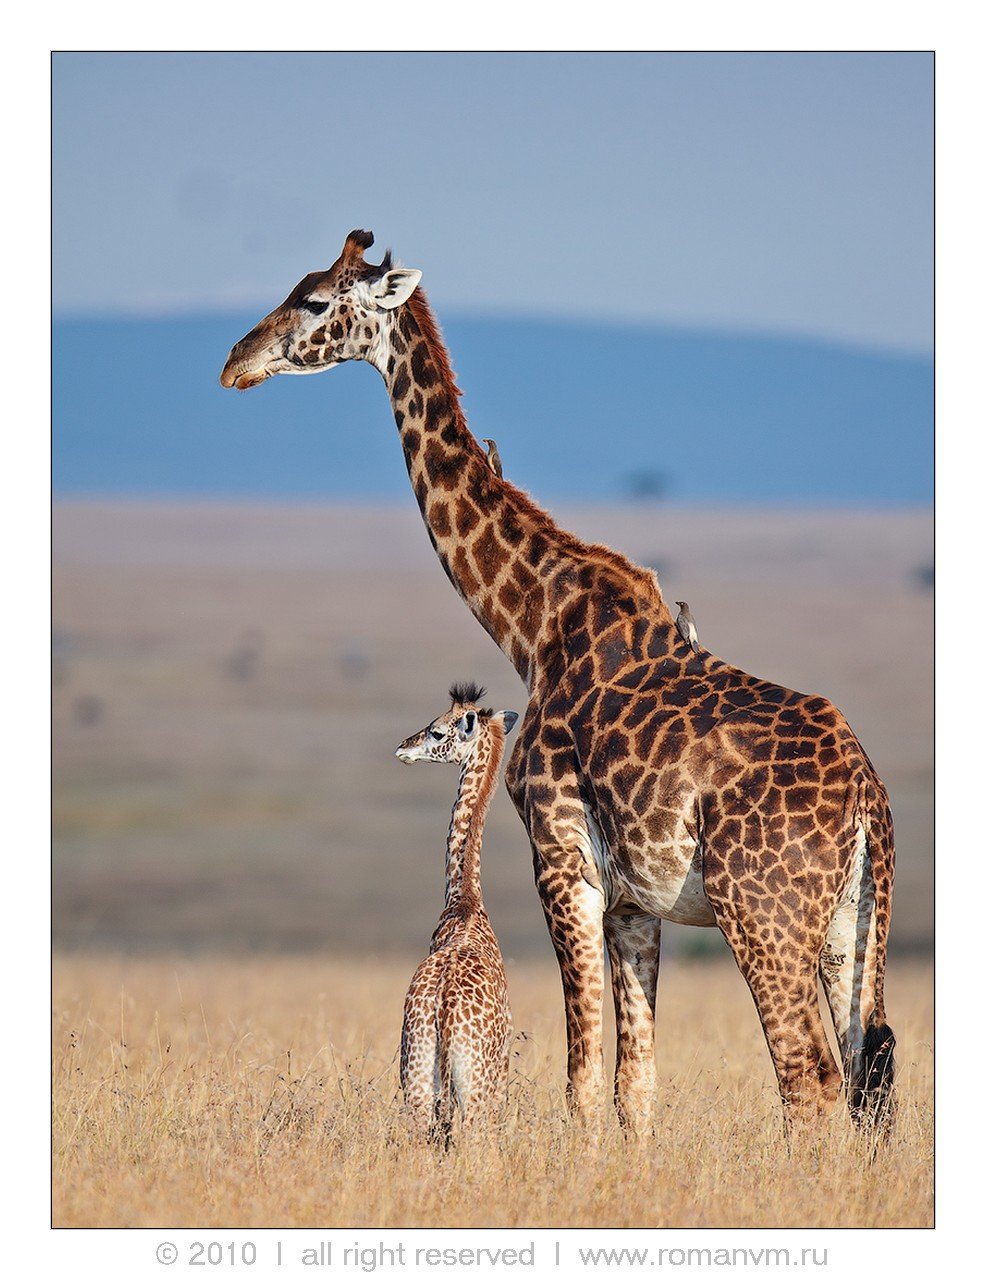 кения, жираф, масаи-мара, wildlife, Роман Мурушкин